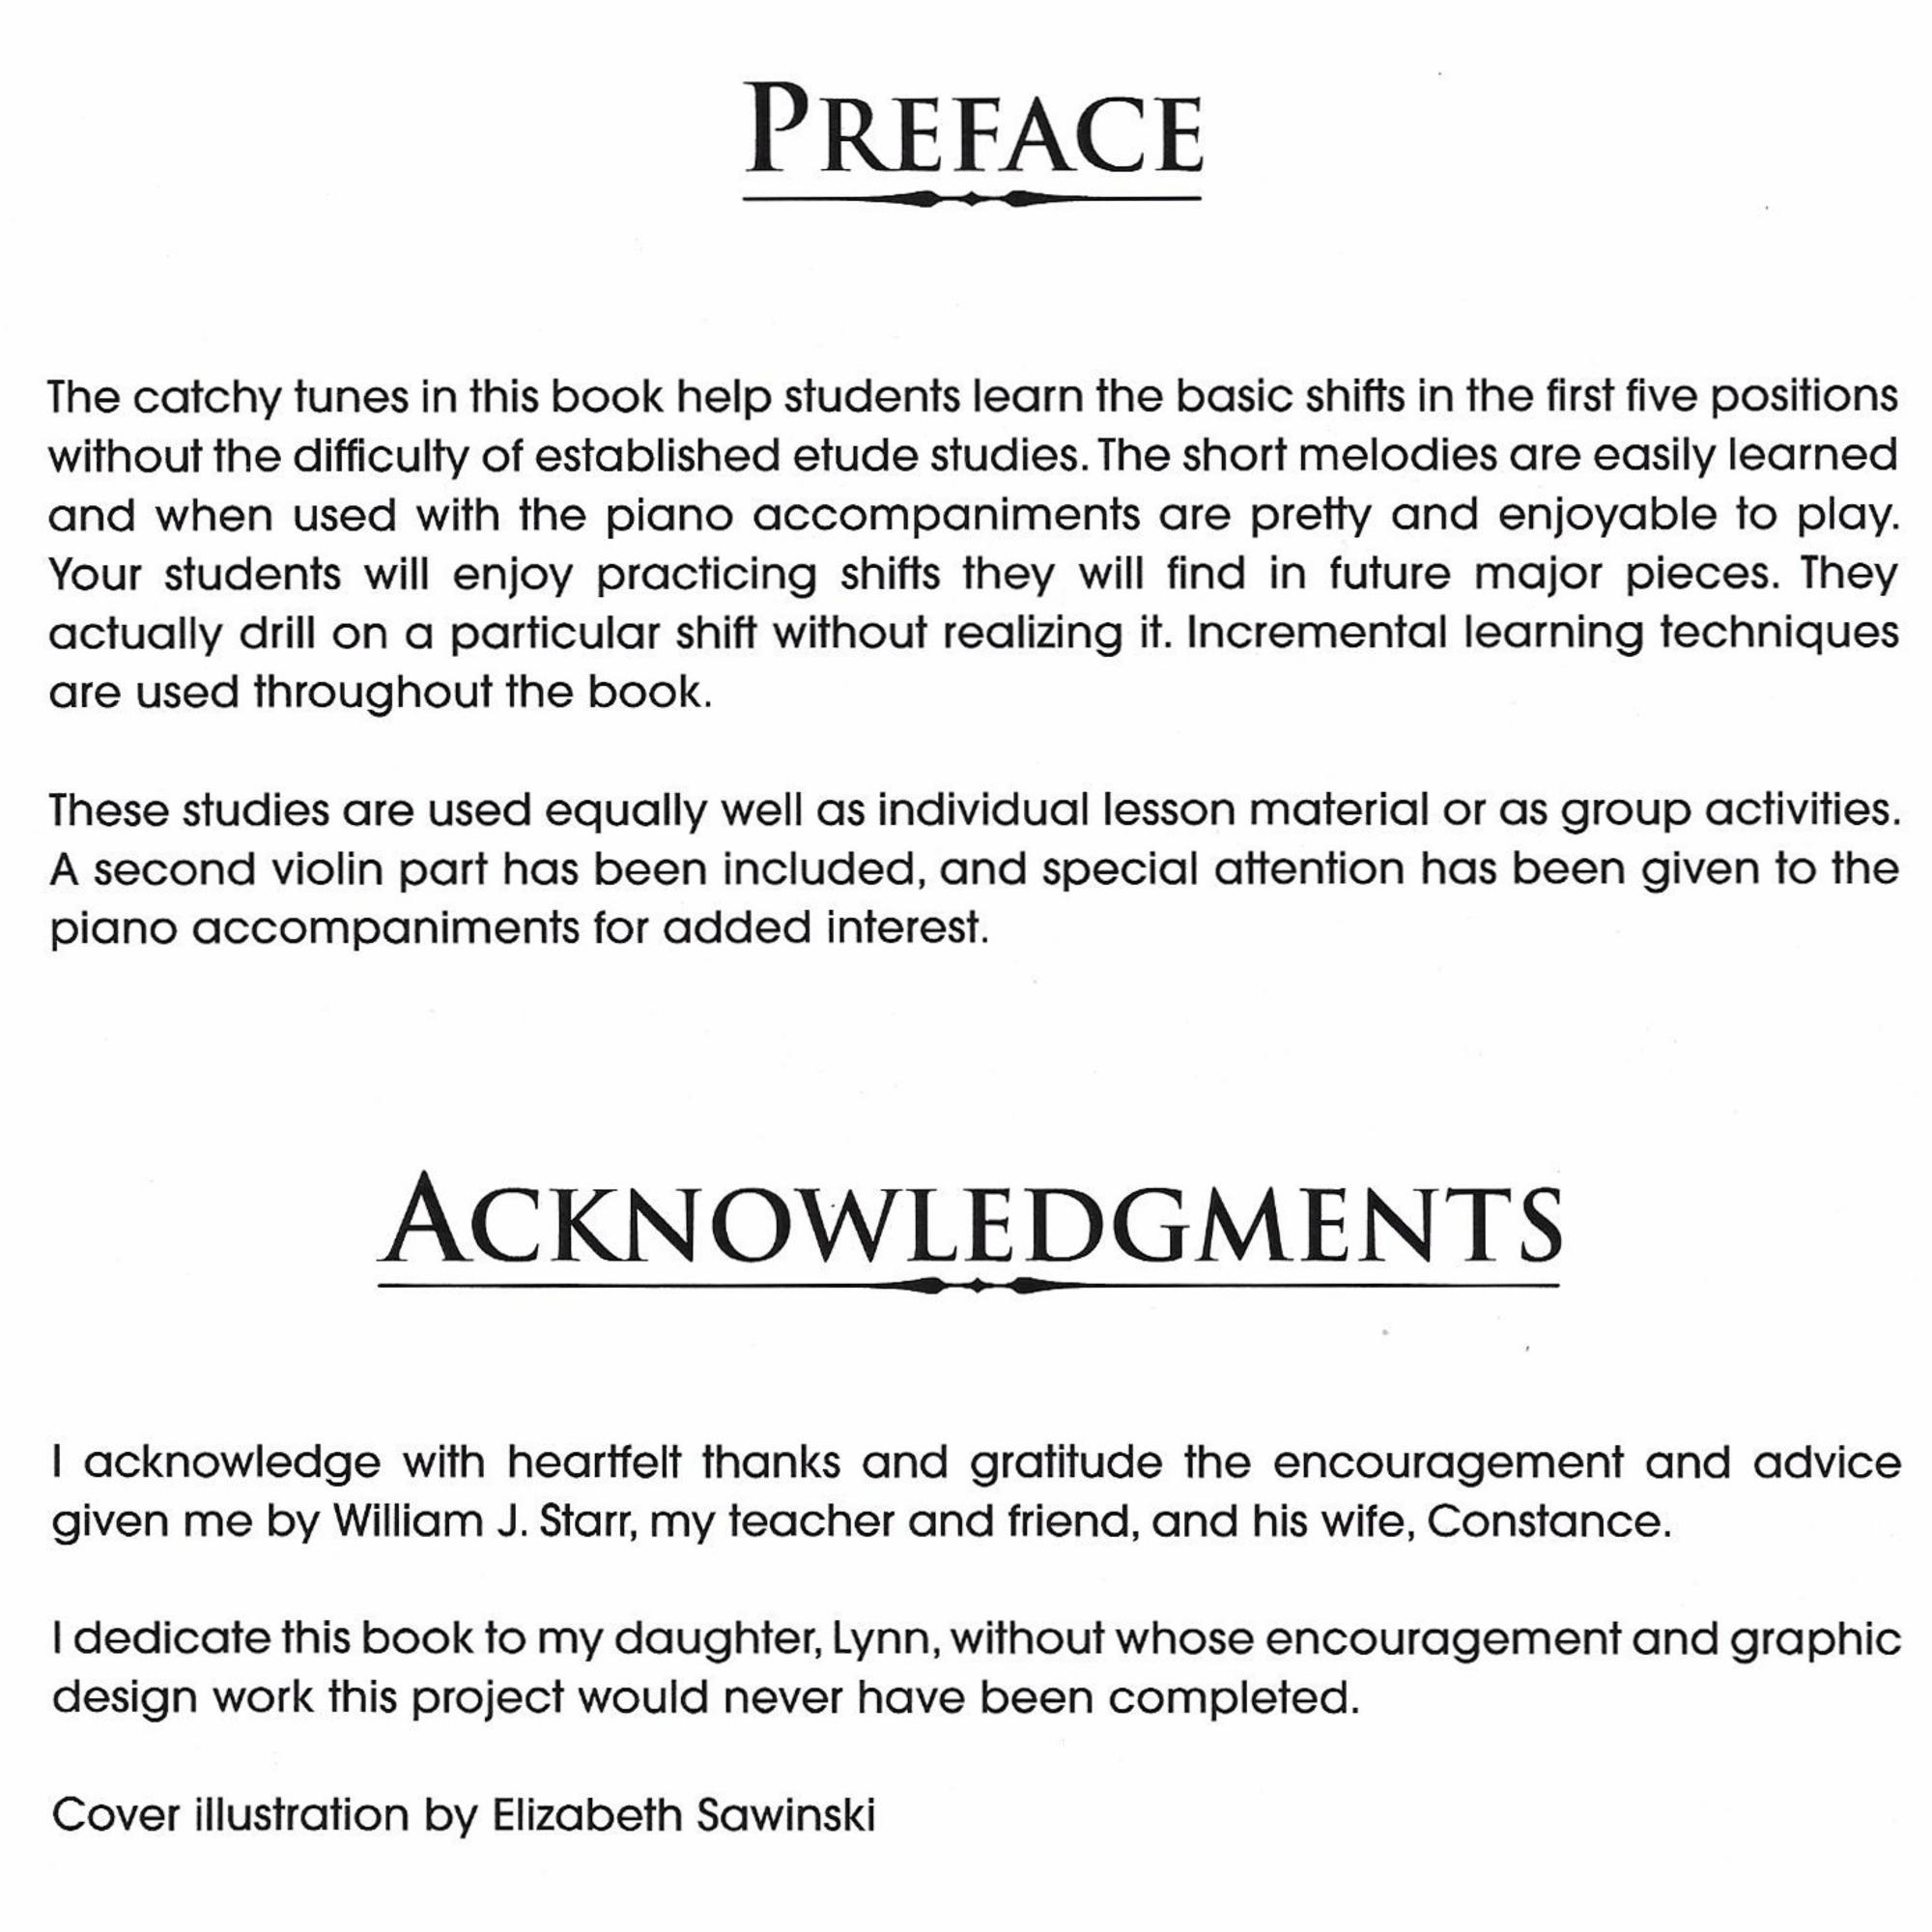 Preface/Acknowledgements